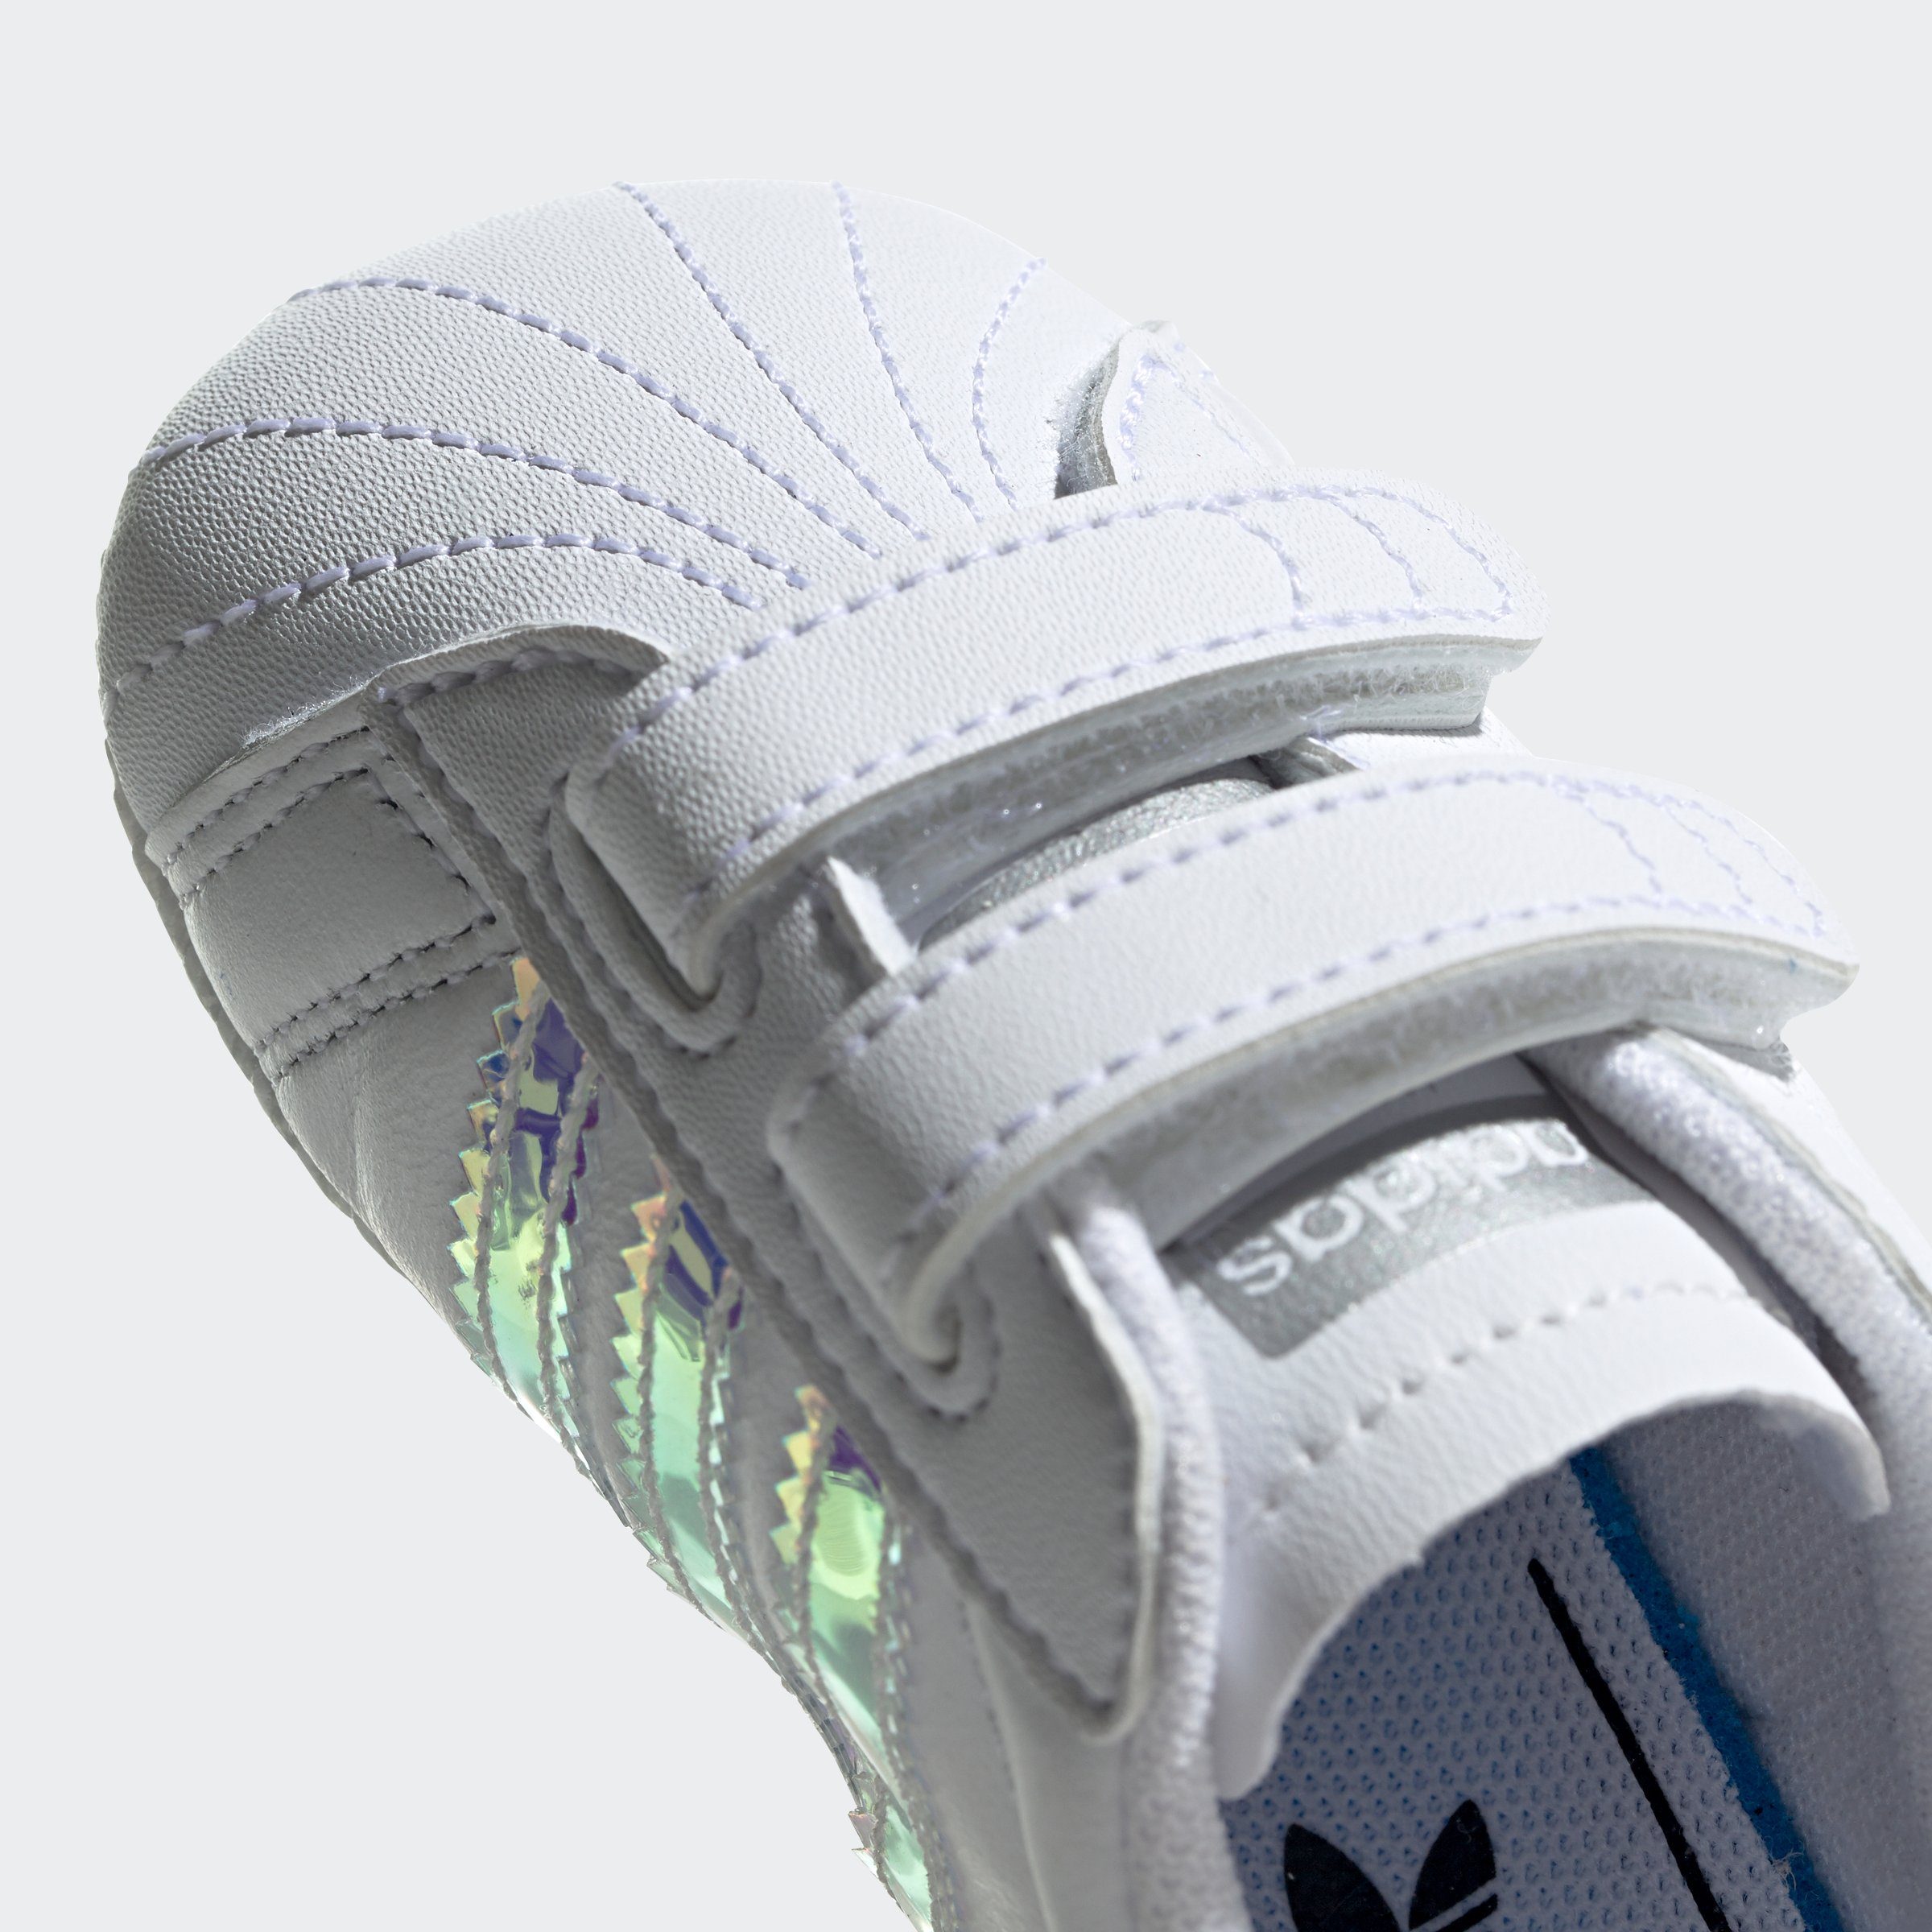 Klettverschluss Sneaker für mit adidas Originals SUPERSTAR Babys